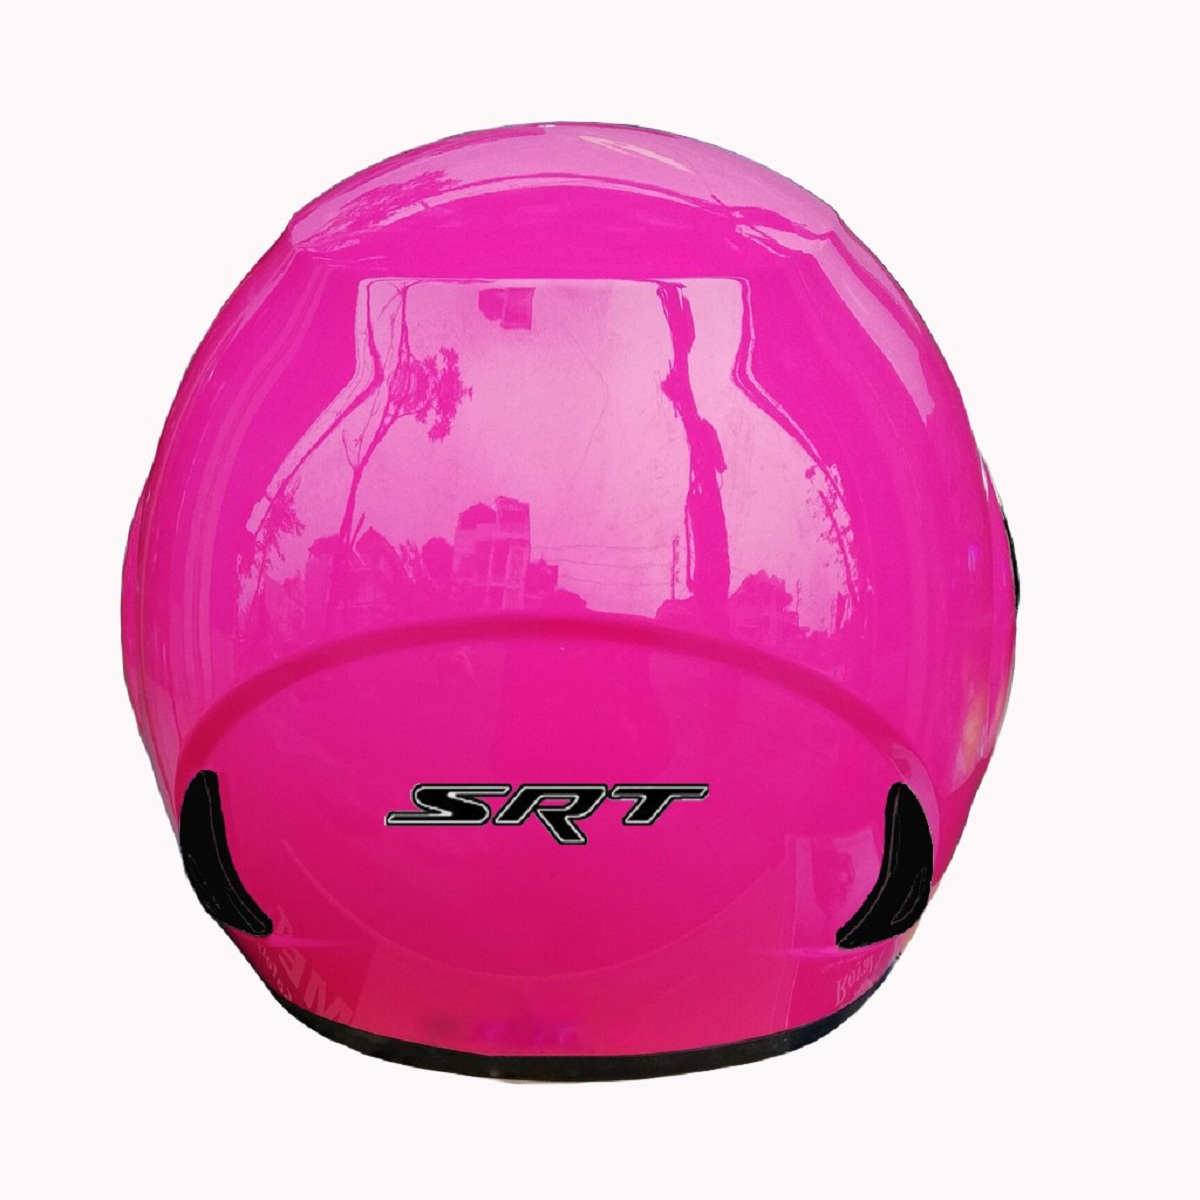 Mũ bảo hiểm 3/4 SRT A19K ASA 03 - màu hồng - thiết kế thể thao, chất liệu nhựa ABS siêu bền